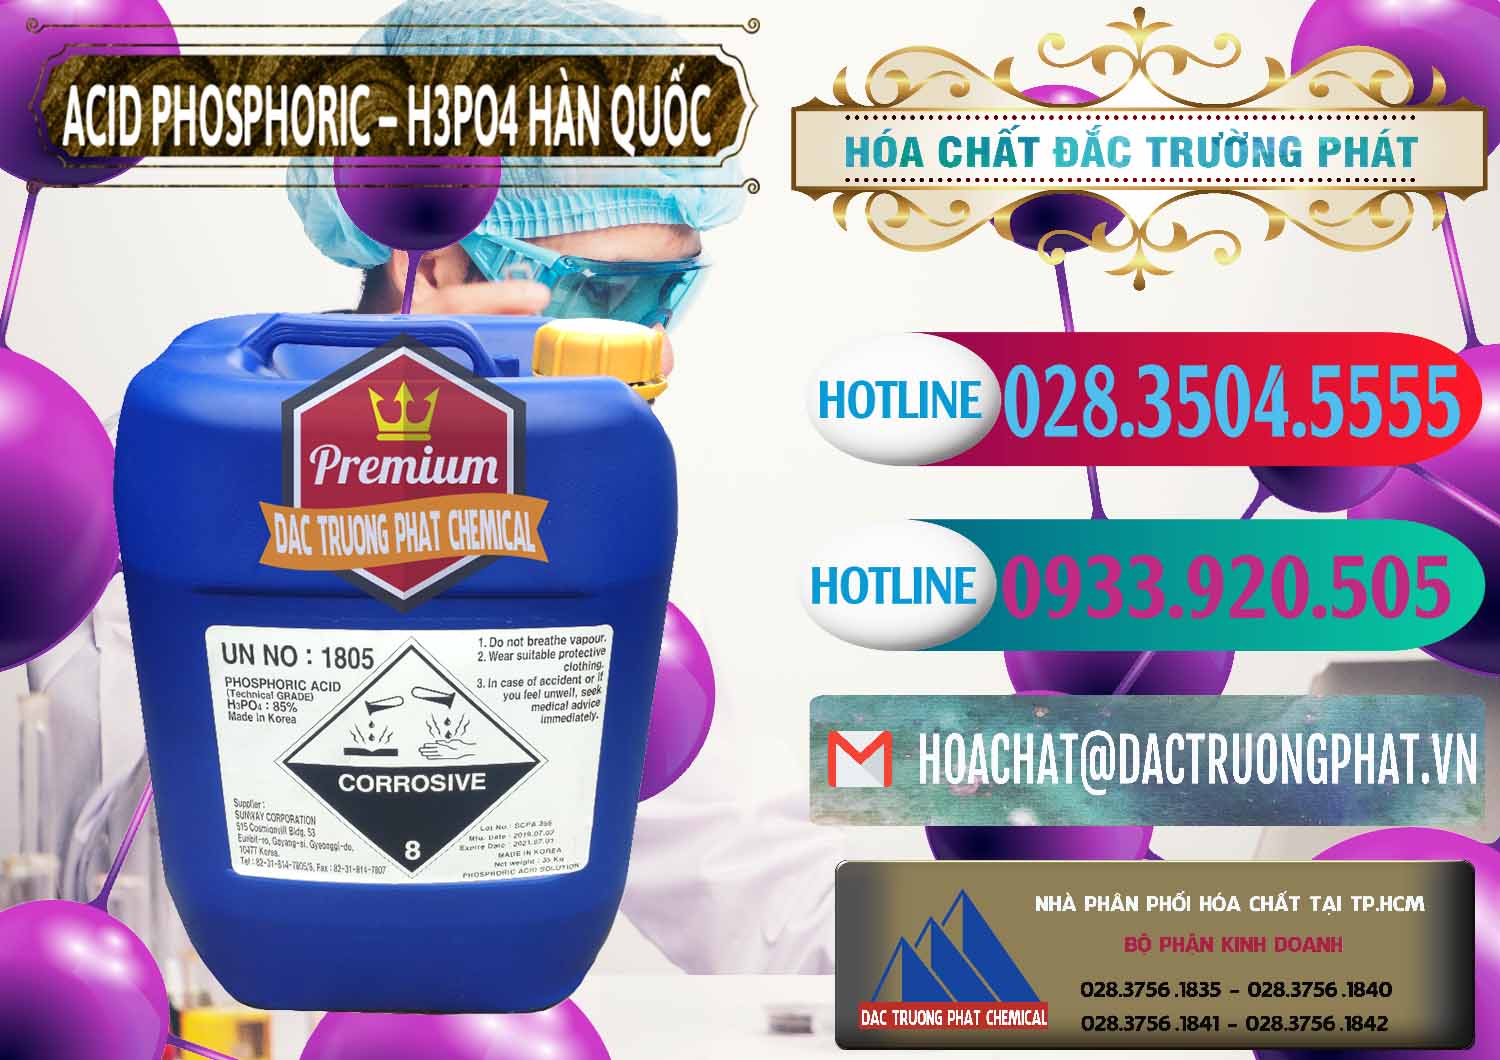 Nơi chuyên bán _ cung ứng Acid Phosphoric – H3PO4 85% Can Xanh Hàn Quốc Korea - 0016 - Nhà phân phối - kinh doanh hóa chất tại TP.HCM - truongphat.vn